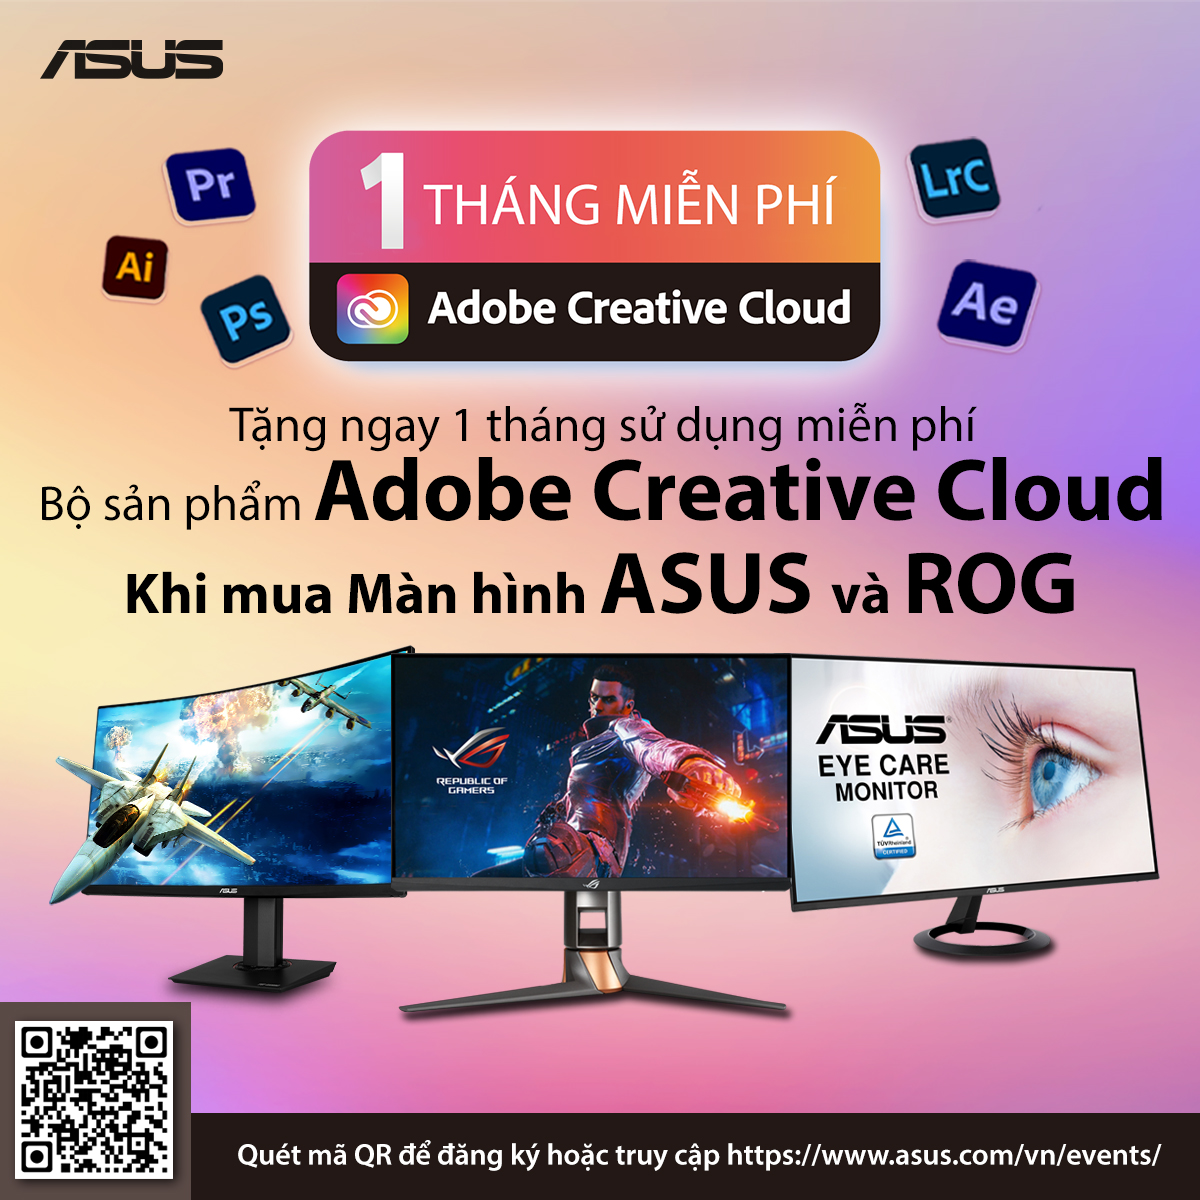 Mua màn hình Asus ProArt tặng ngay bộ sản phẩm Adobe Creative Cloud trị giá 5.500.000VND